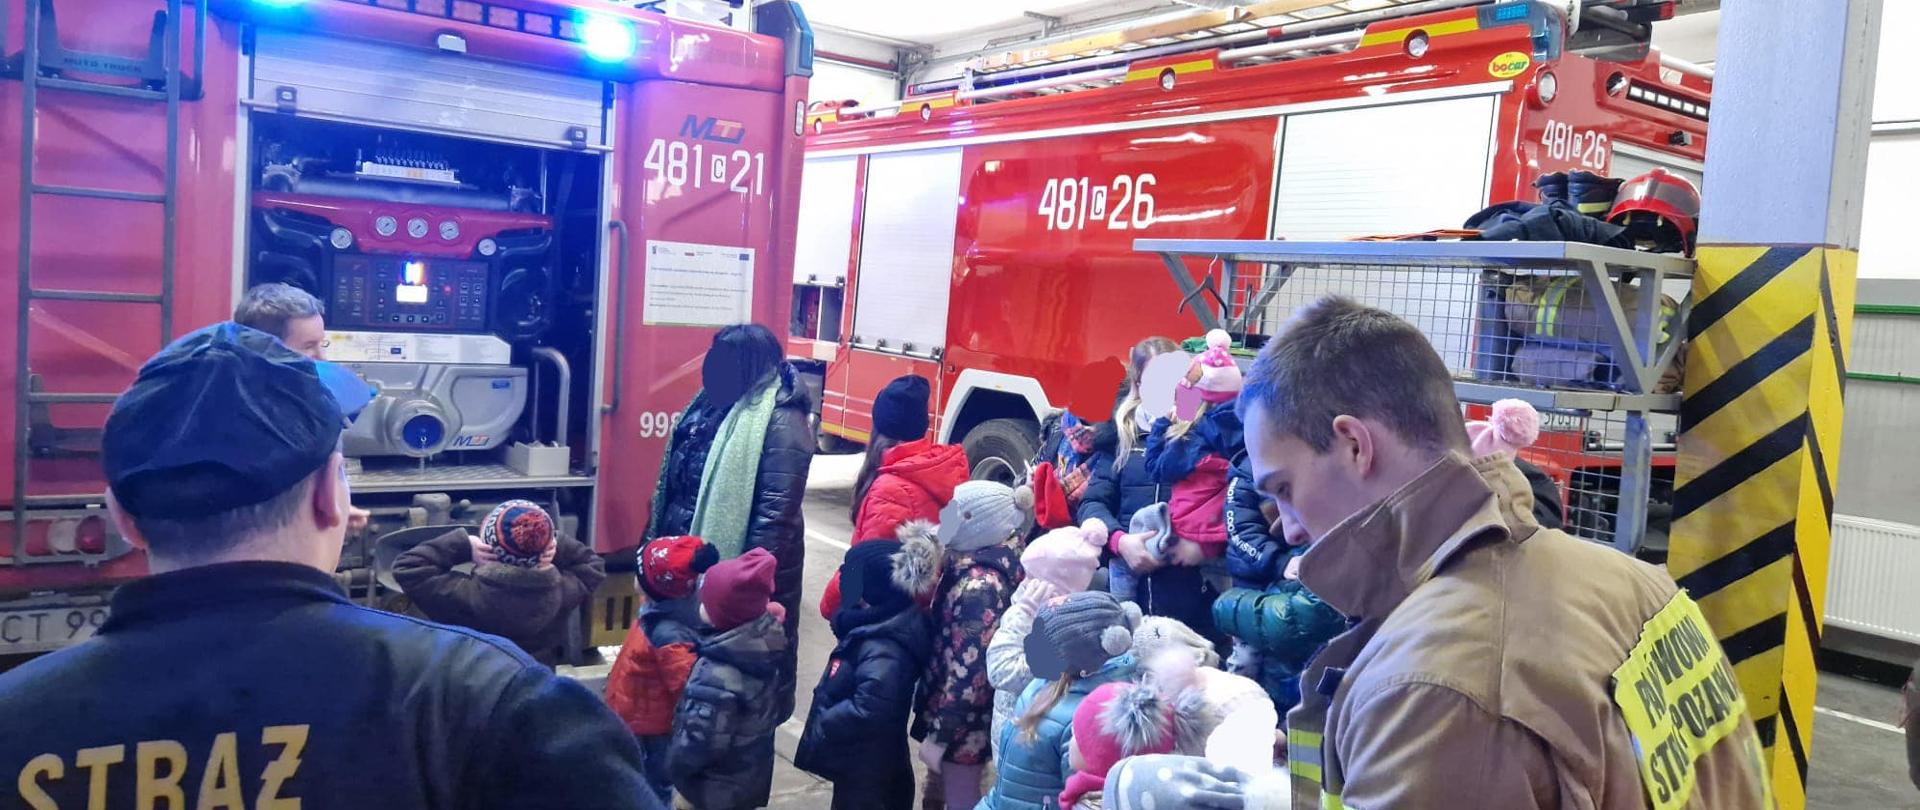 Strażacy pokazują dzieciom samochody pożarnicze